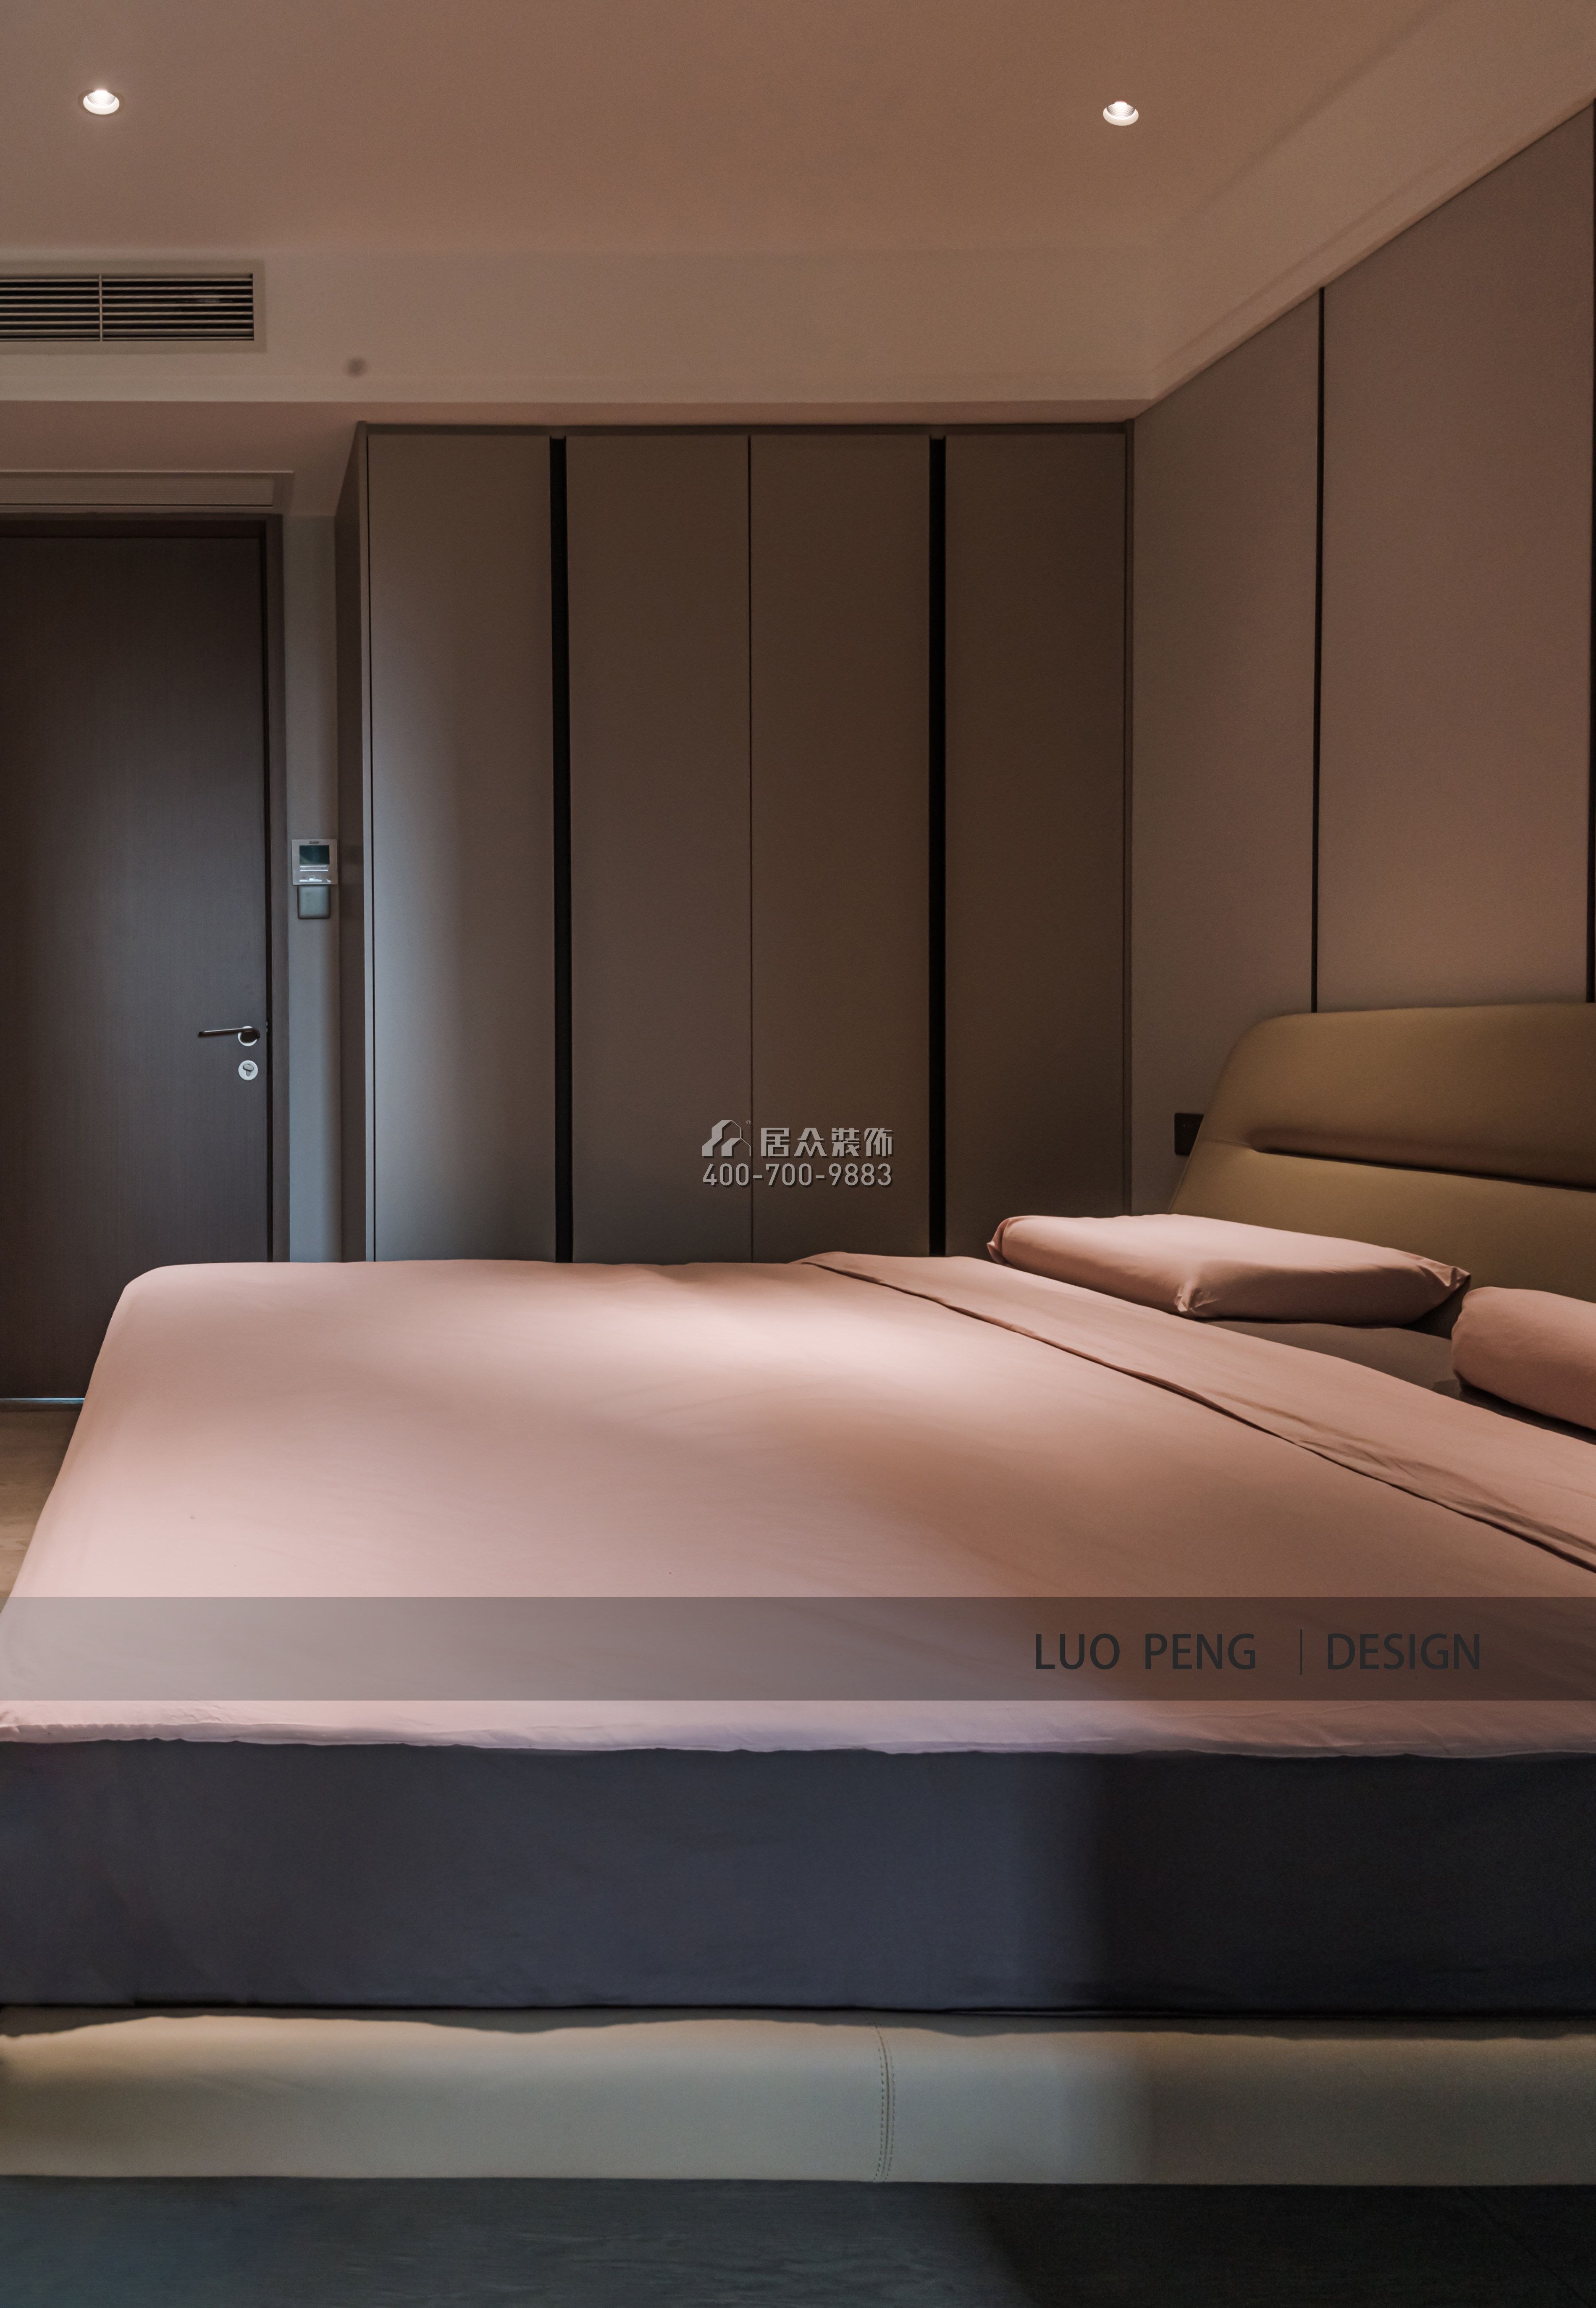 曦灣天馥220平方米現代簡約風格平層戶型臥室裝修效果圖